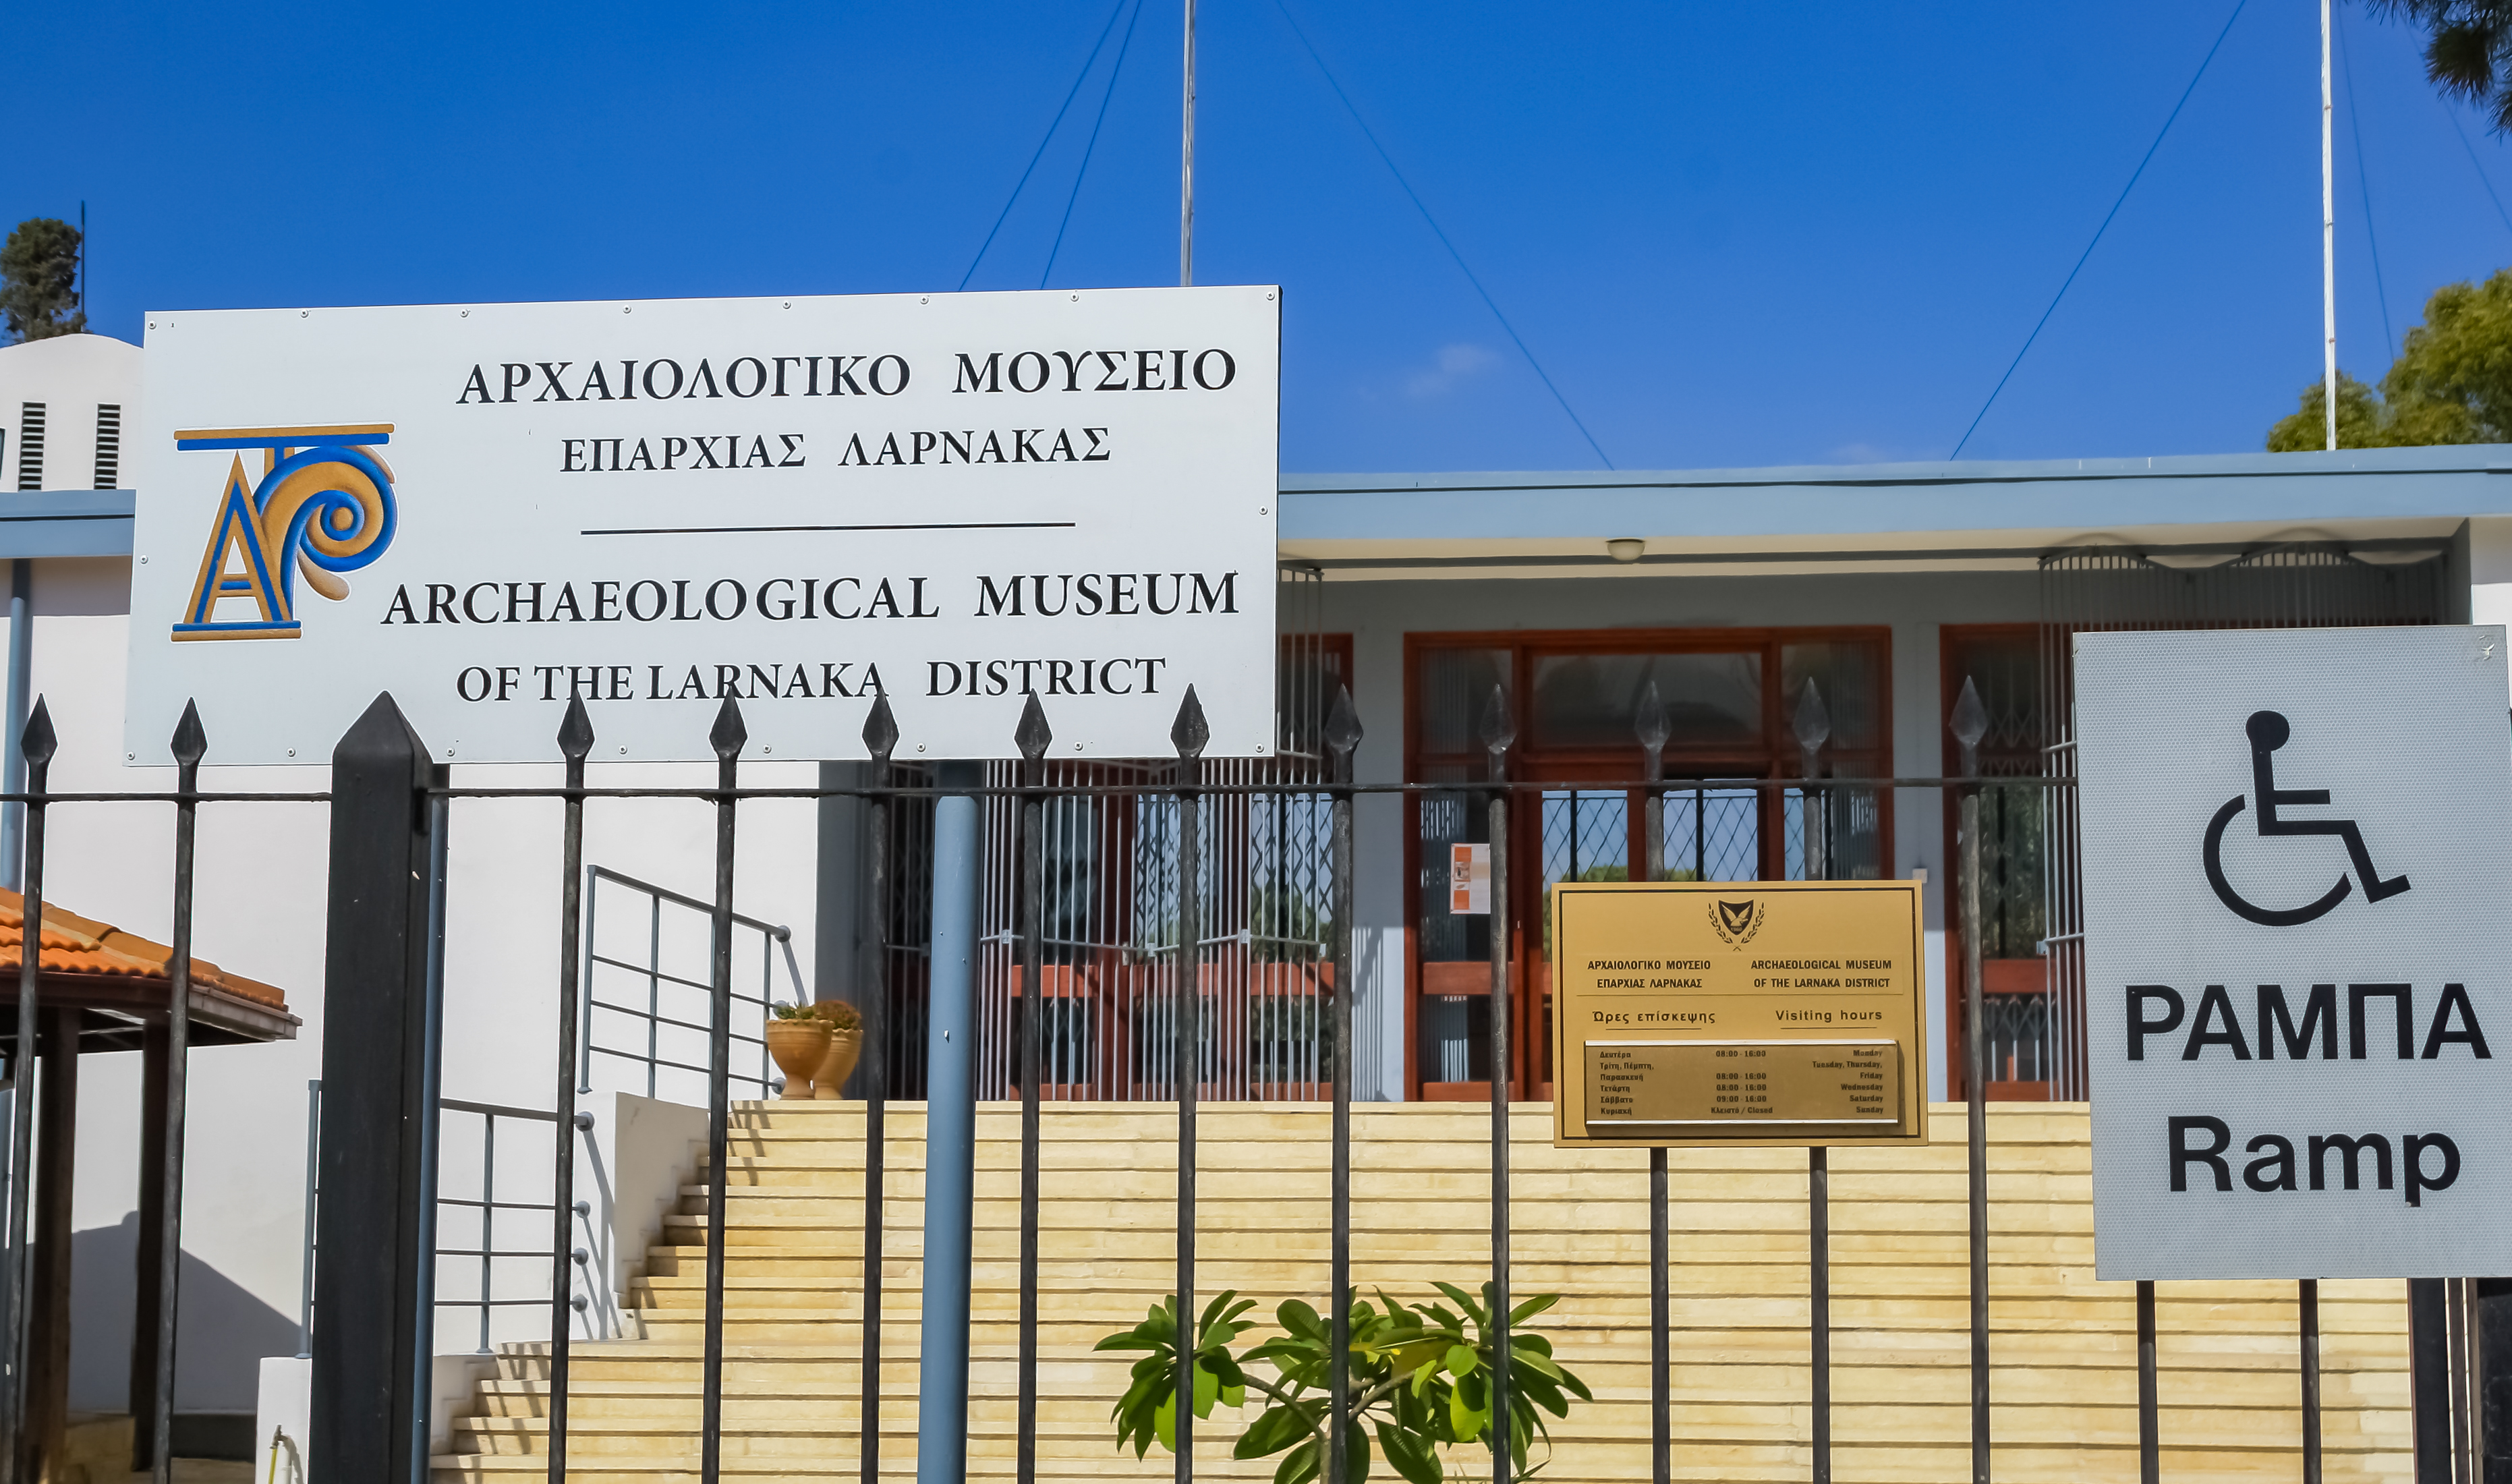 Η γραφειοκρατία κρατά κλειστό το αρχαιολογικό μουσείο από τον Μάιο του 2017